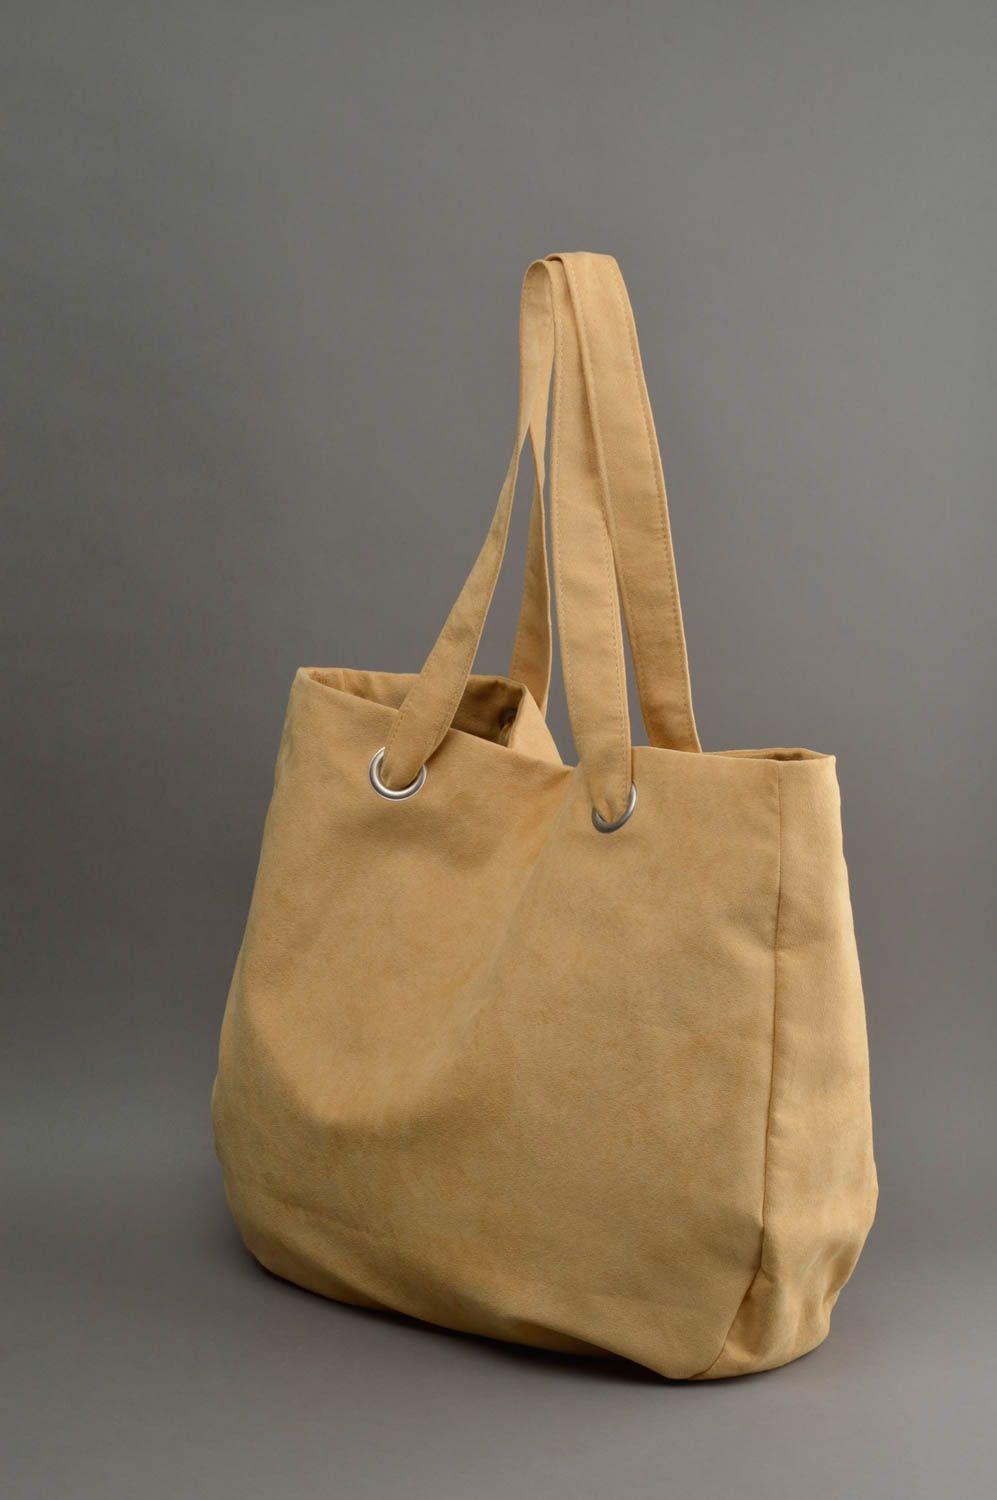 Вместительная женская сумка из ткани бежевая с двумя ручками аксессуар хенд мейд фото 2